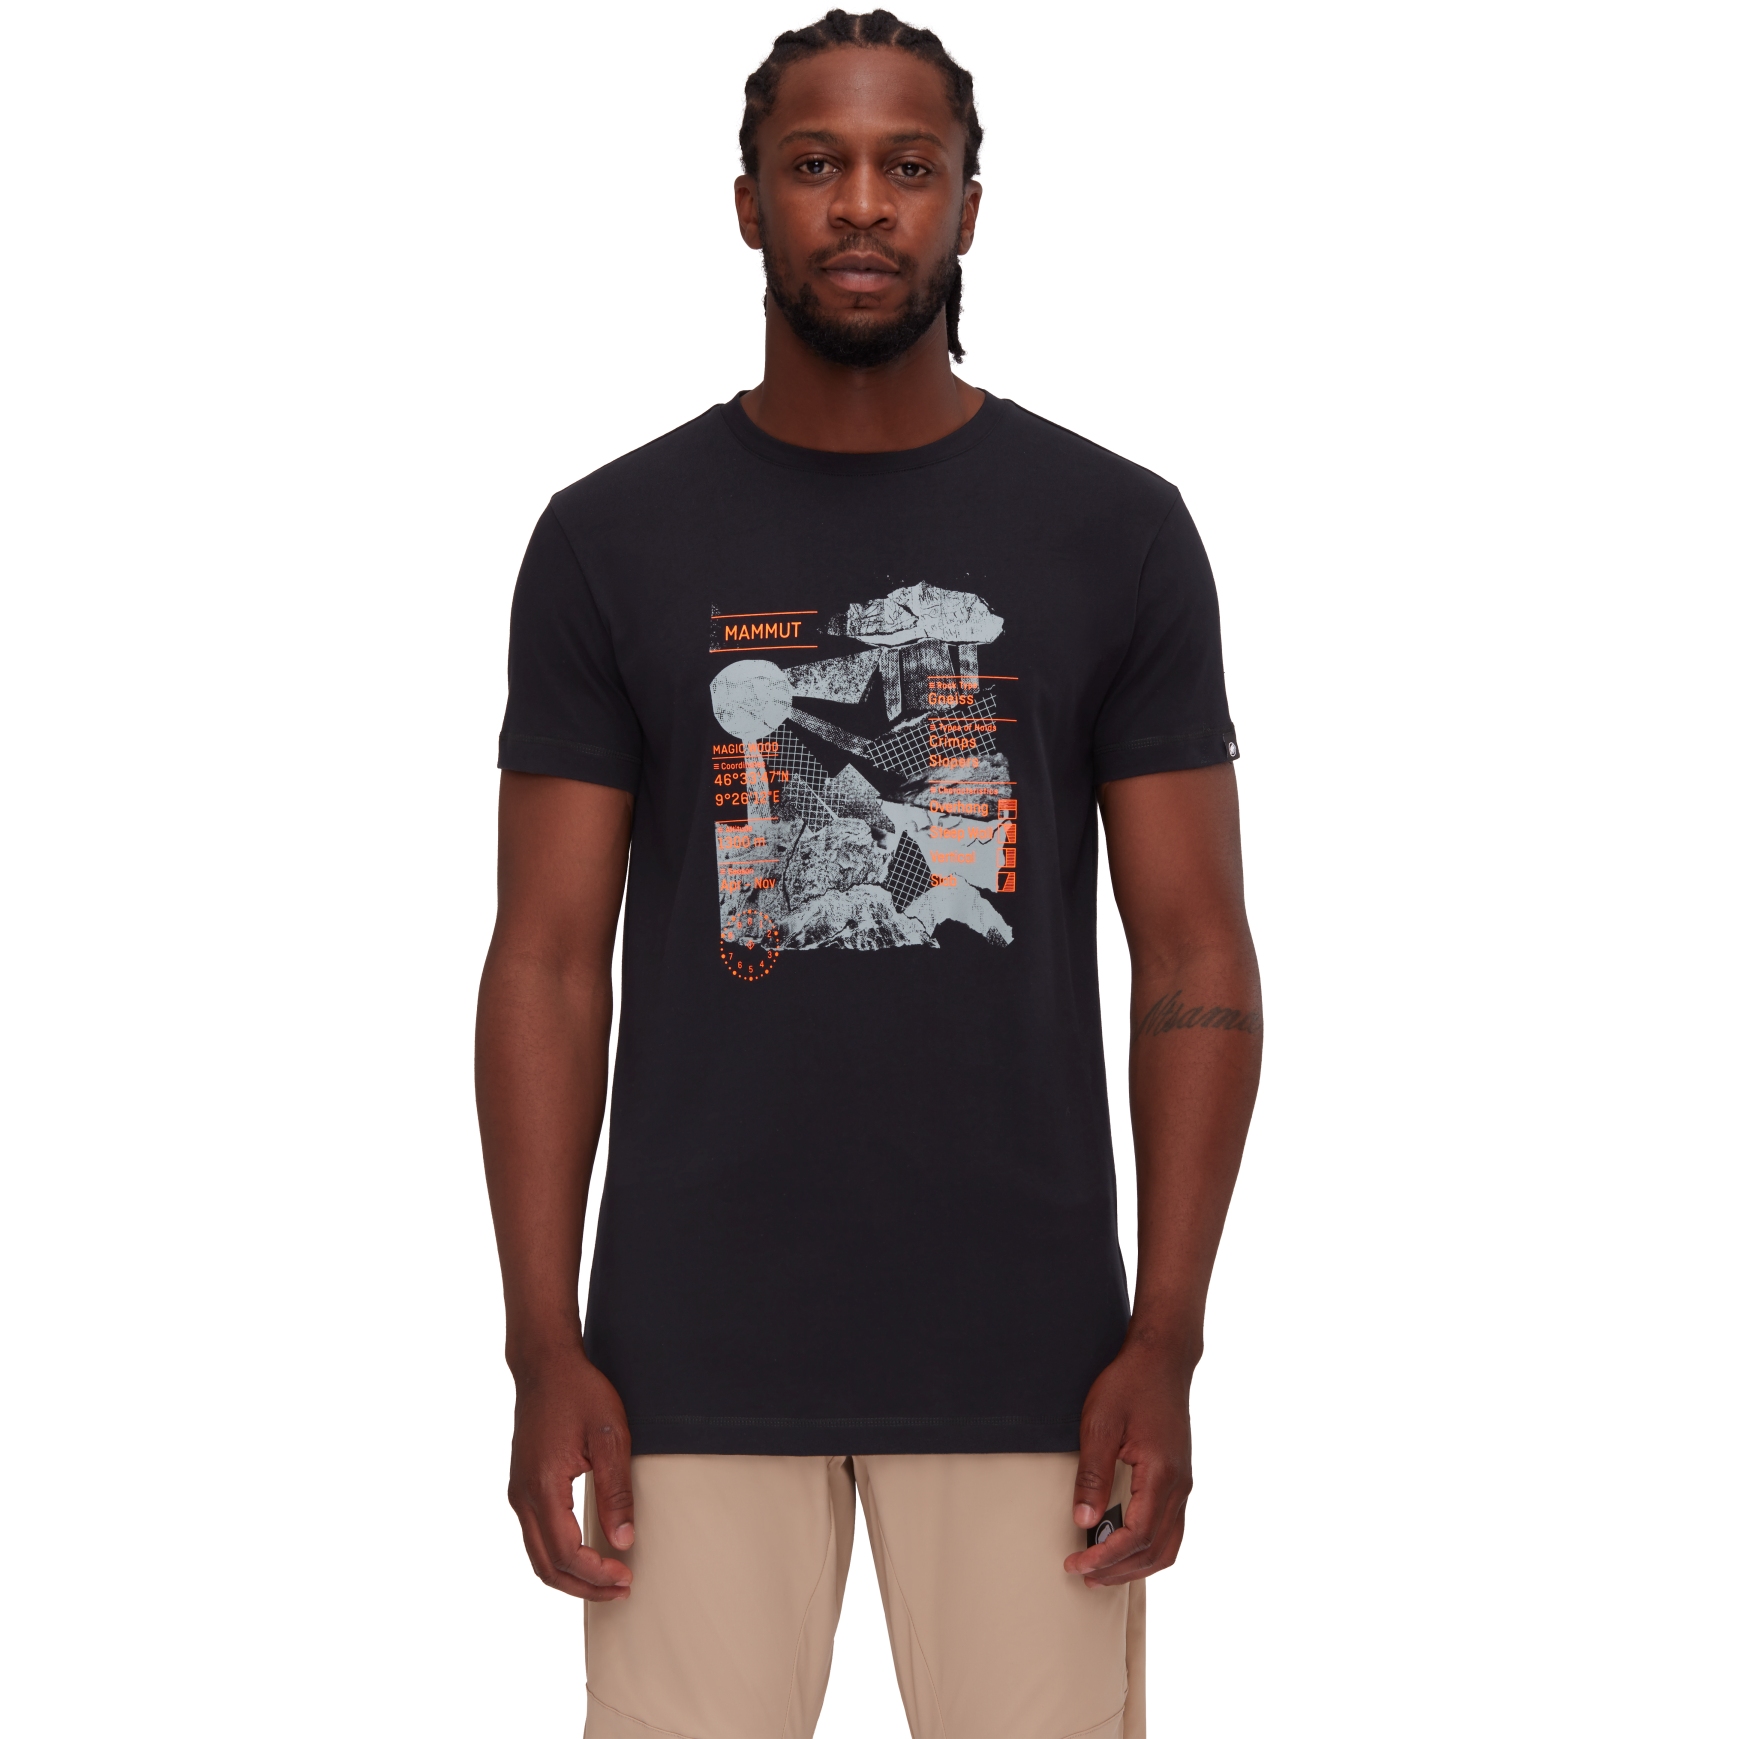 Produktbild von Mammut Massone Rocks T-Shirt Herren - schwarz